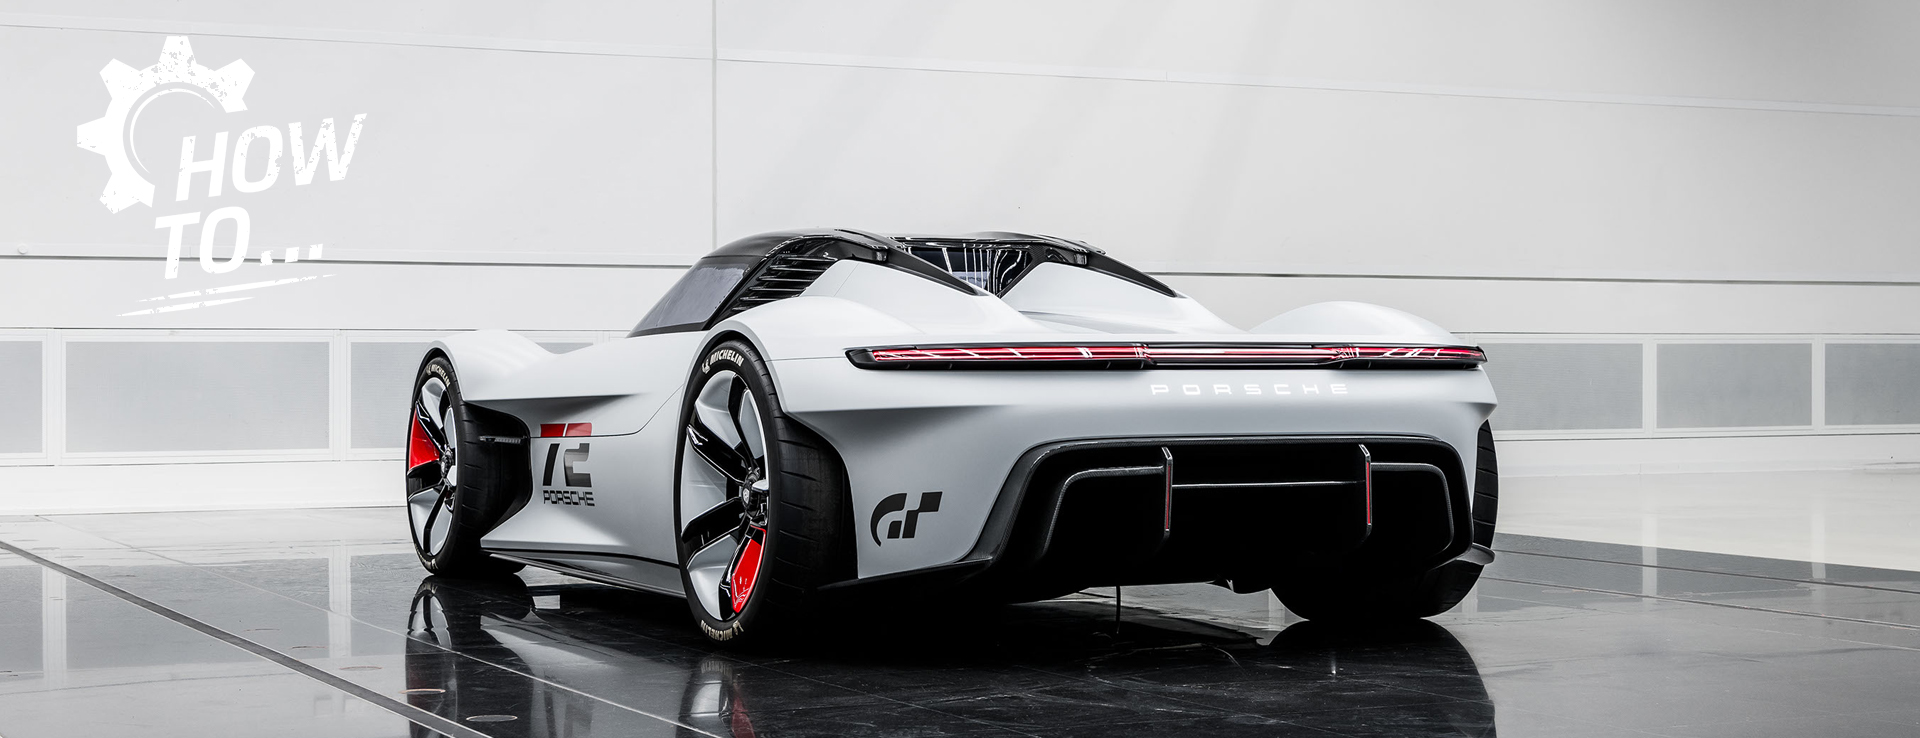 Rear view of the Porsche Vision Gran Turismo concept car